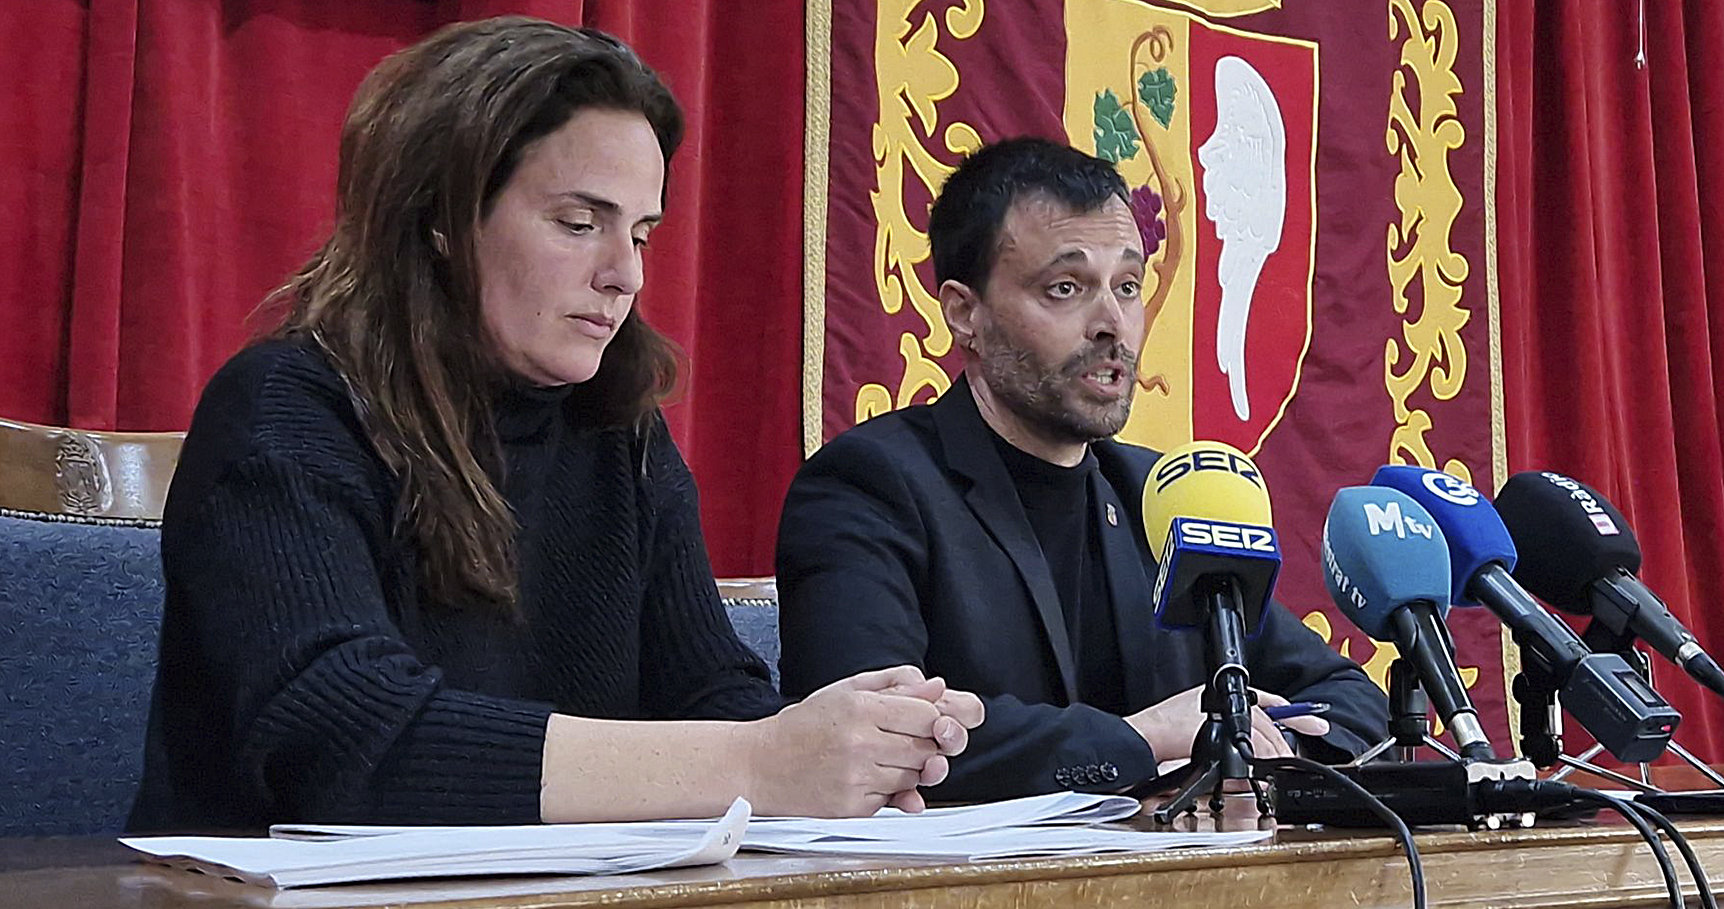 El alcalde de Vinaròs, Guillem Alsina, ayer en rueda de prensa junto a la concejala Carmen Morellà.